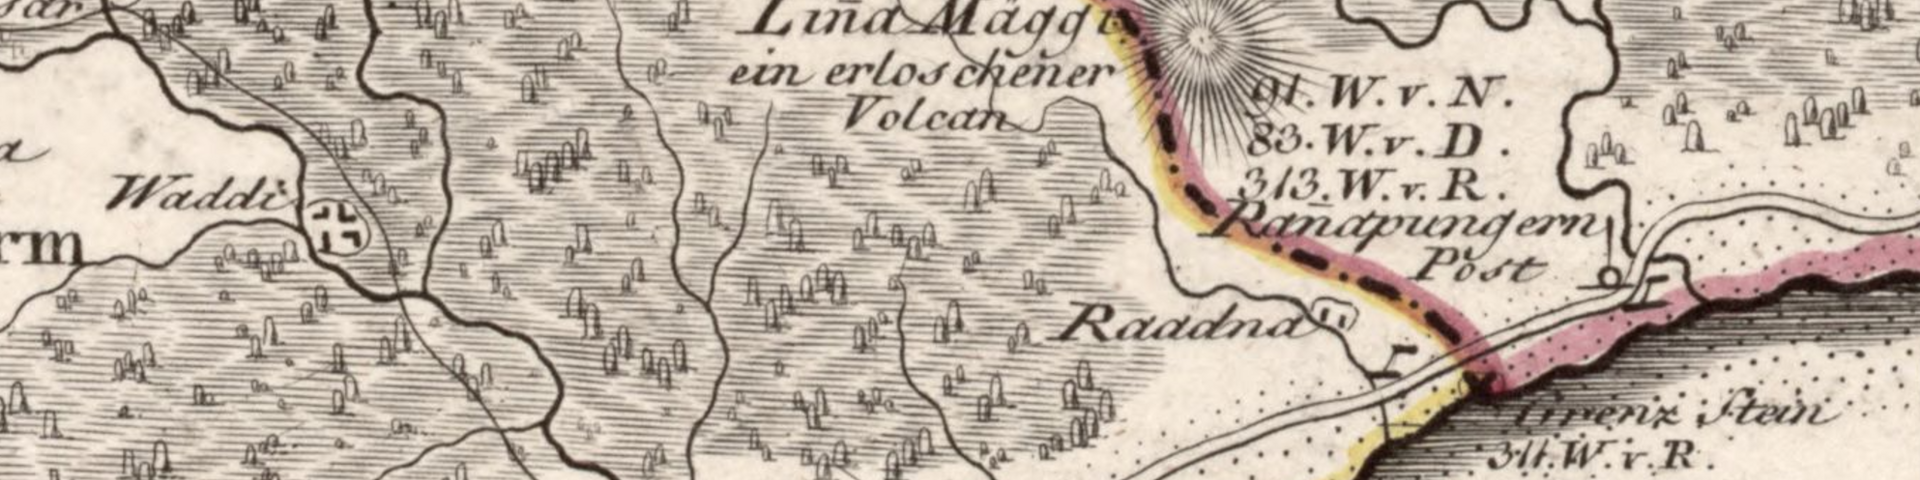 Pilt "Krahv Ludwig August Mellini eestvõttel avaldatud Liivimaa atlasest